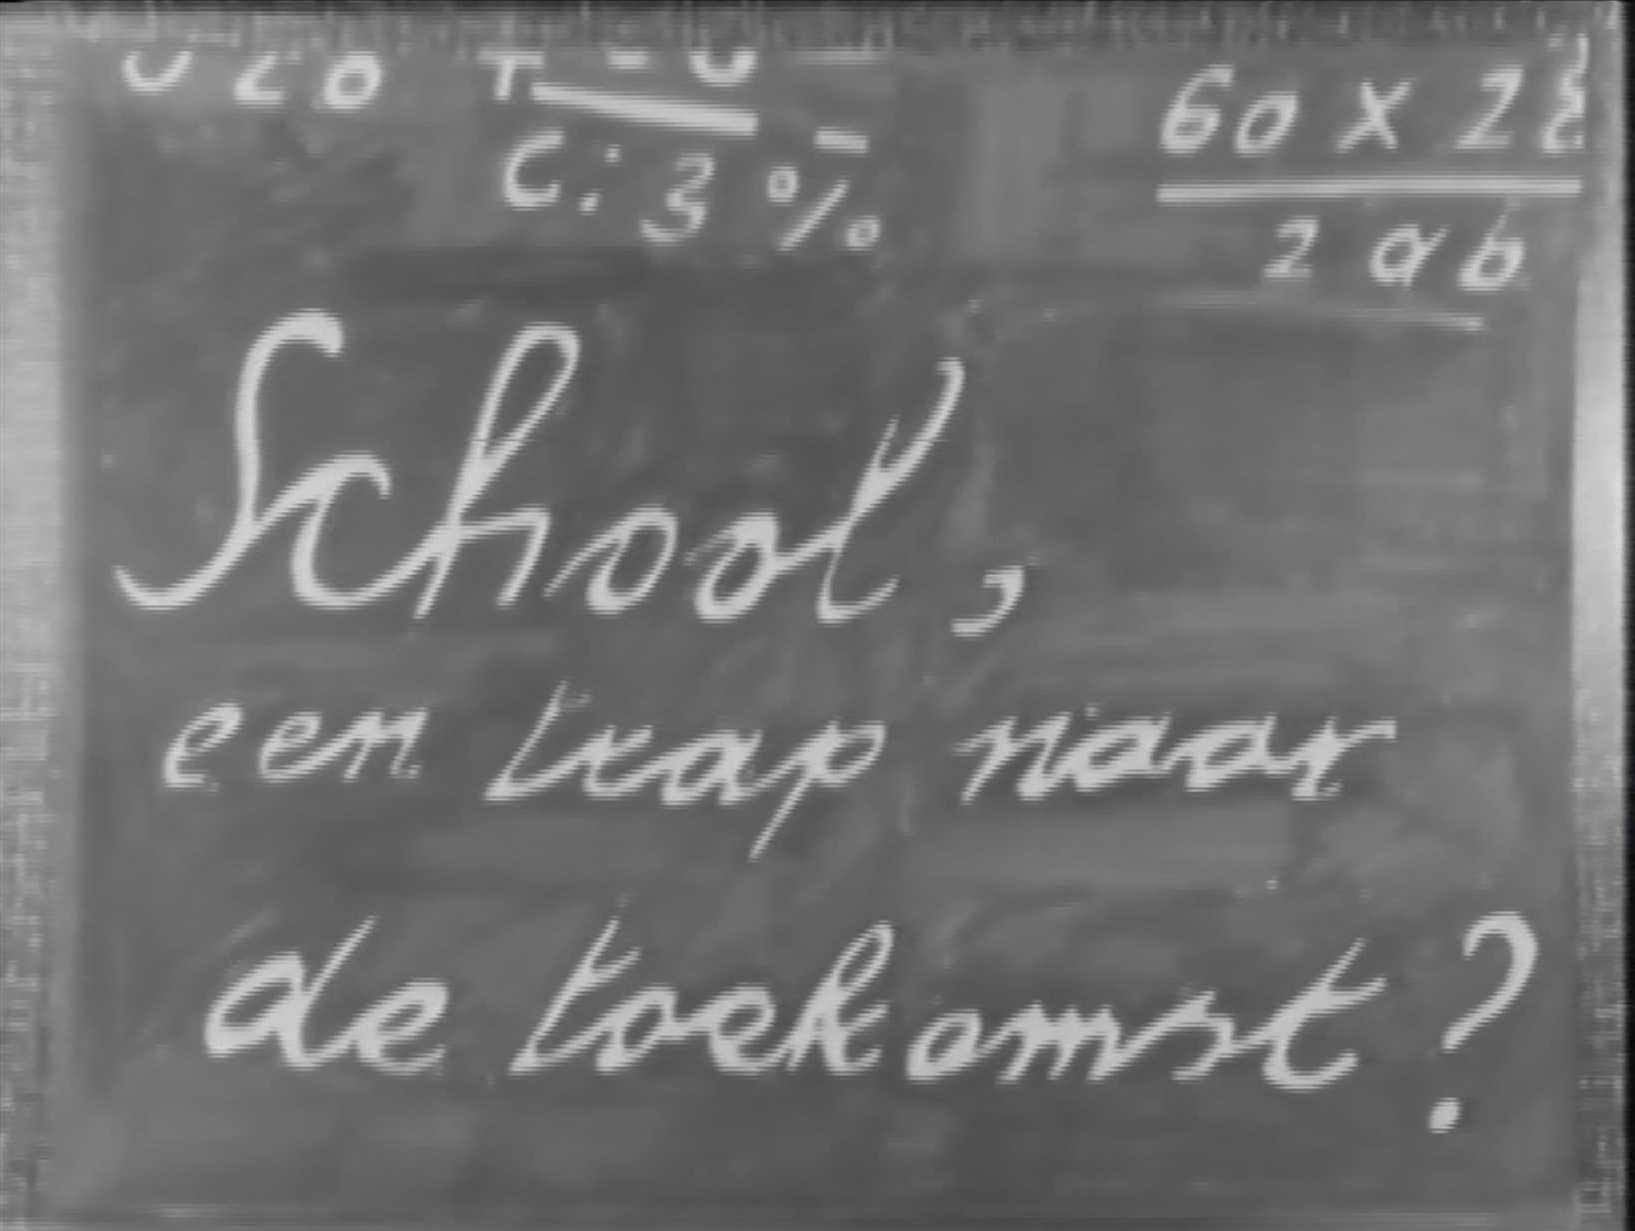 1983 FILM Cursus filmmaken 'School, trap naar de toekomst'